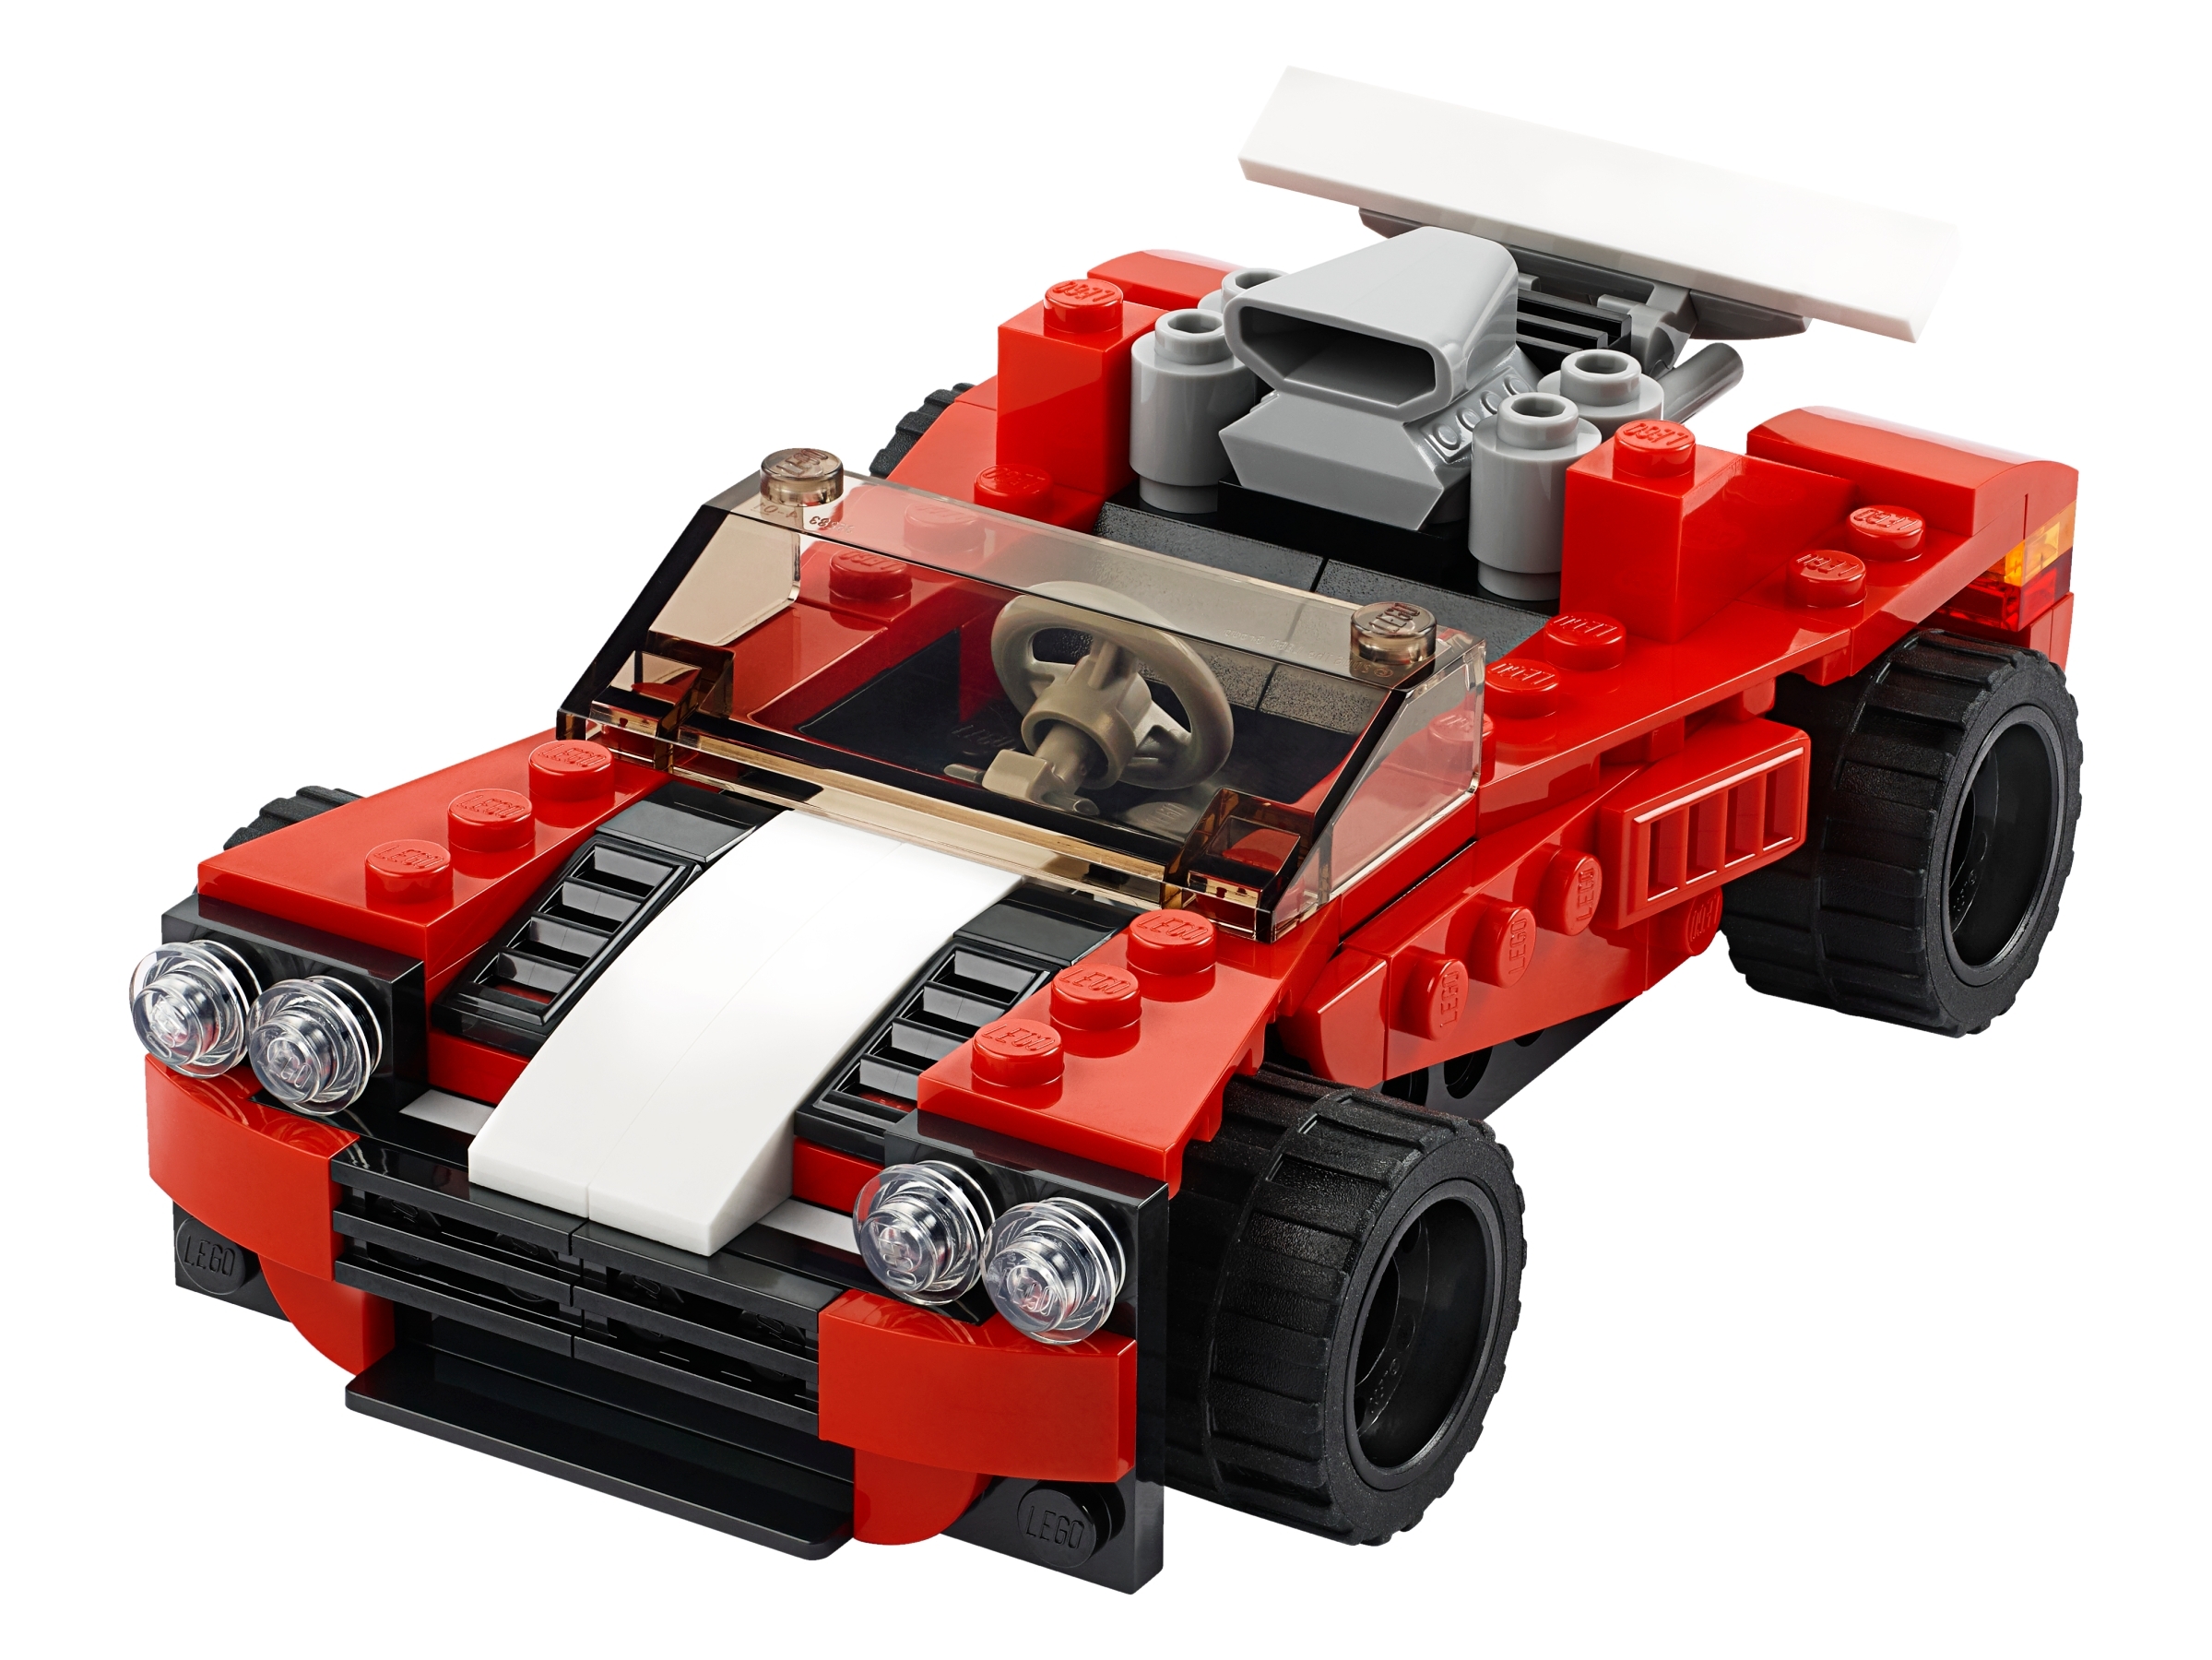 lego creator cars